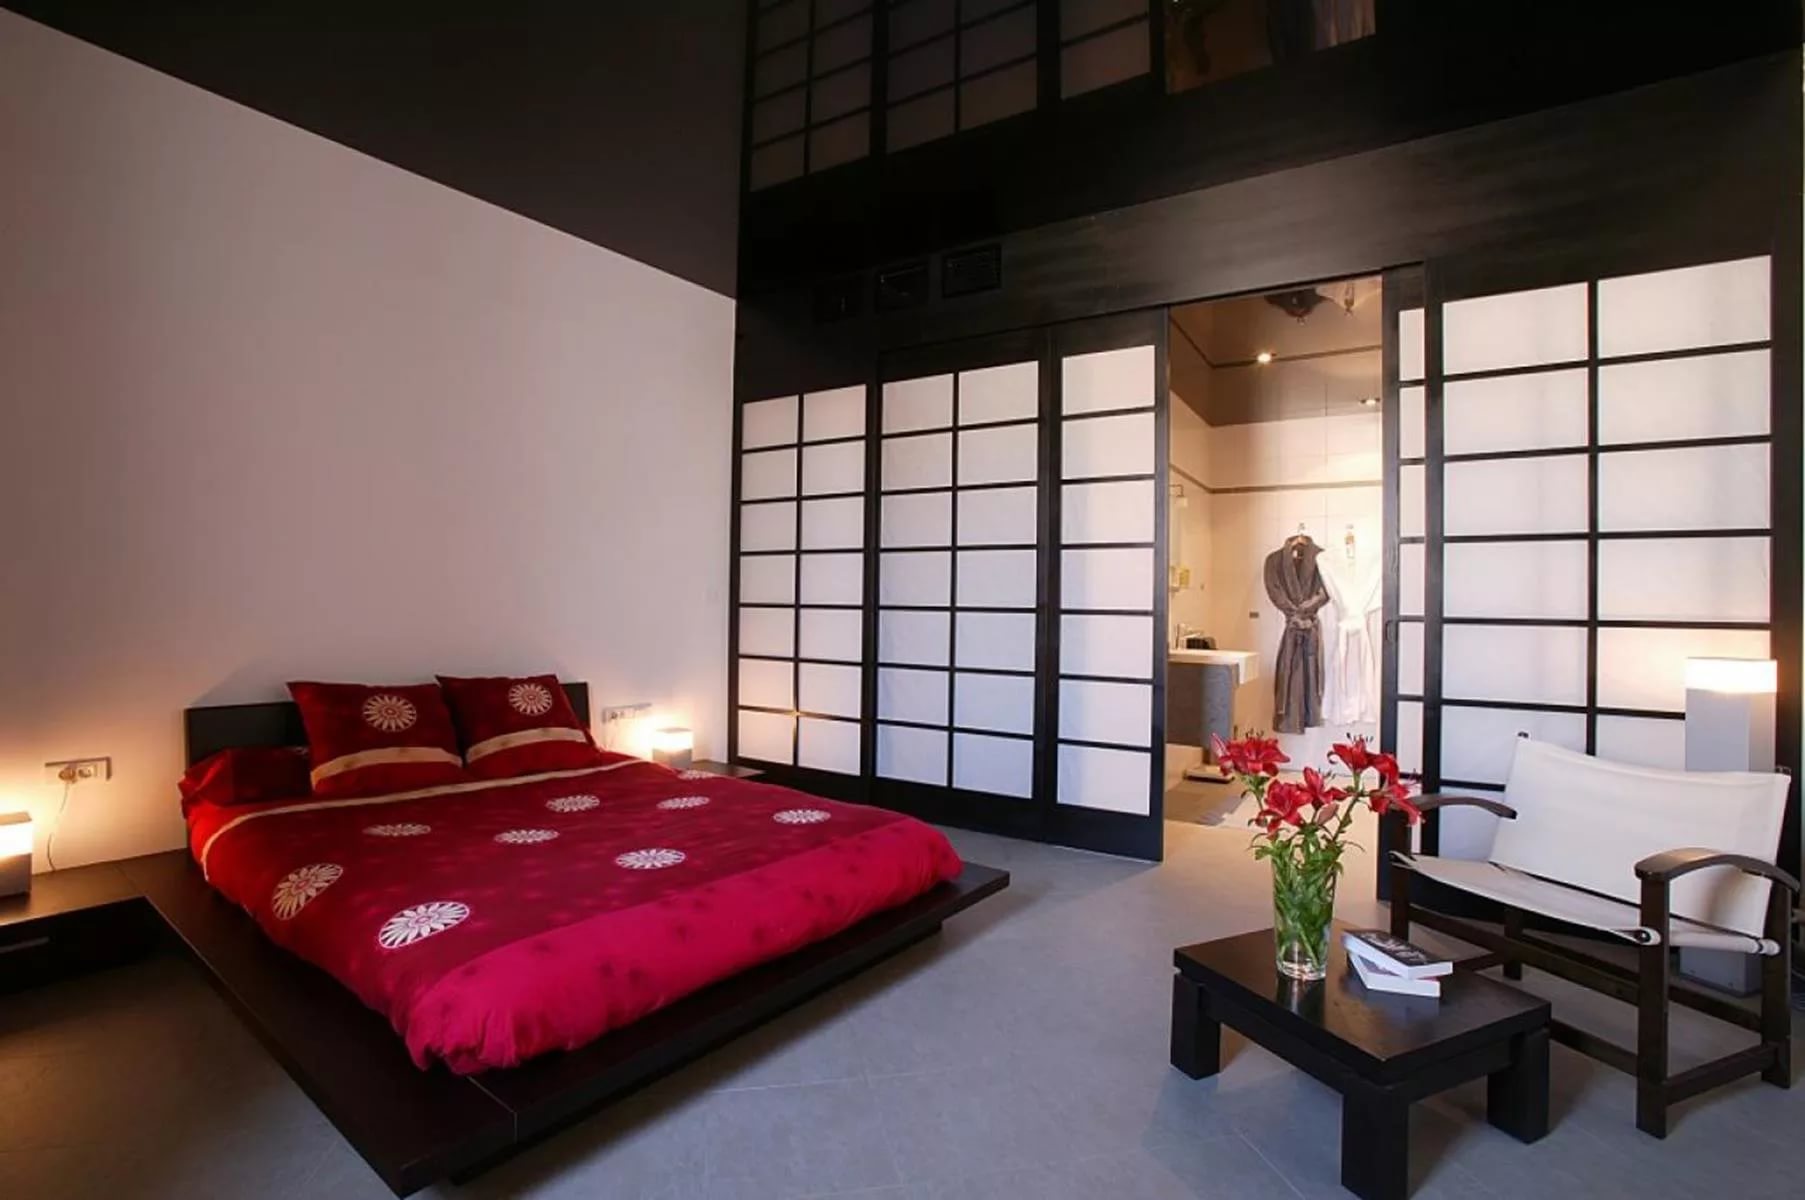 الداخلية لغرفة النوم بواسطة فنغ شوي ديكور الصورة